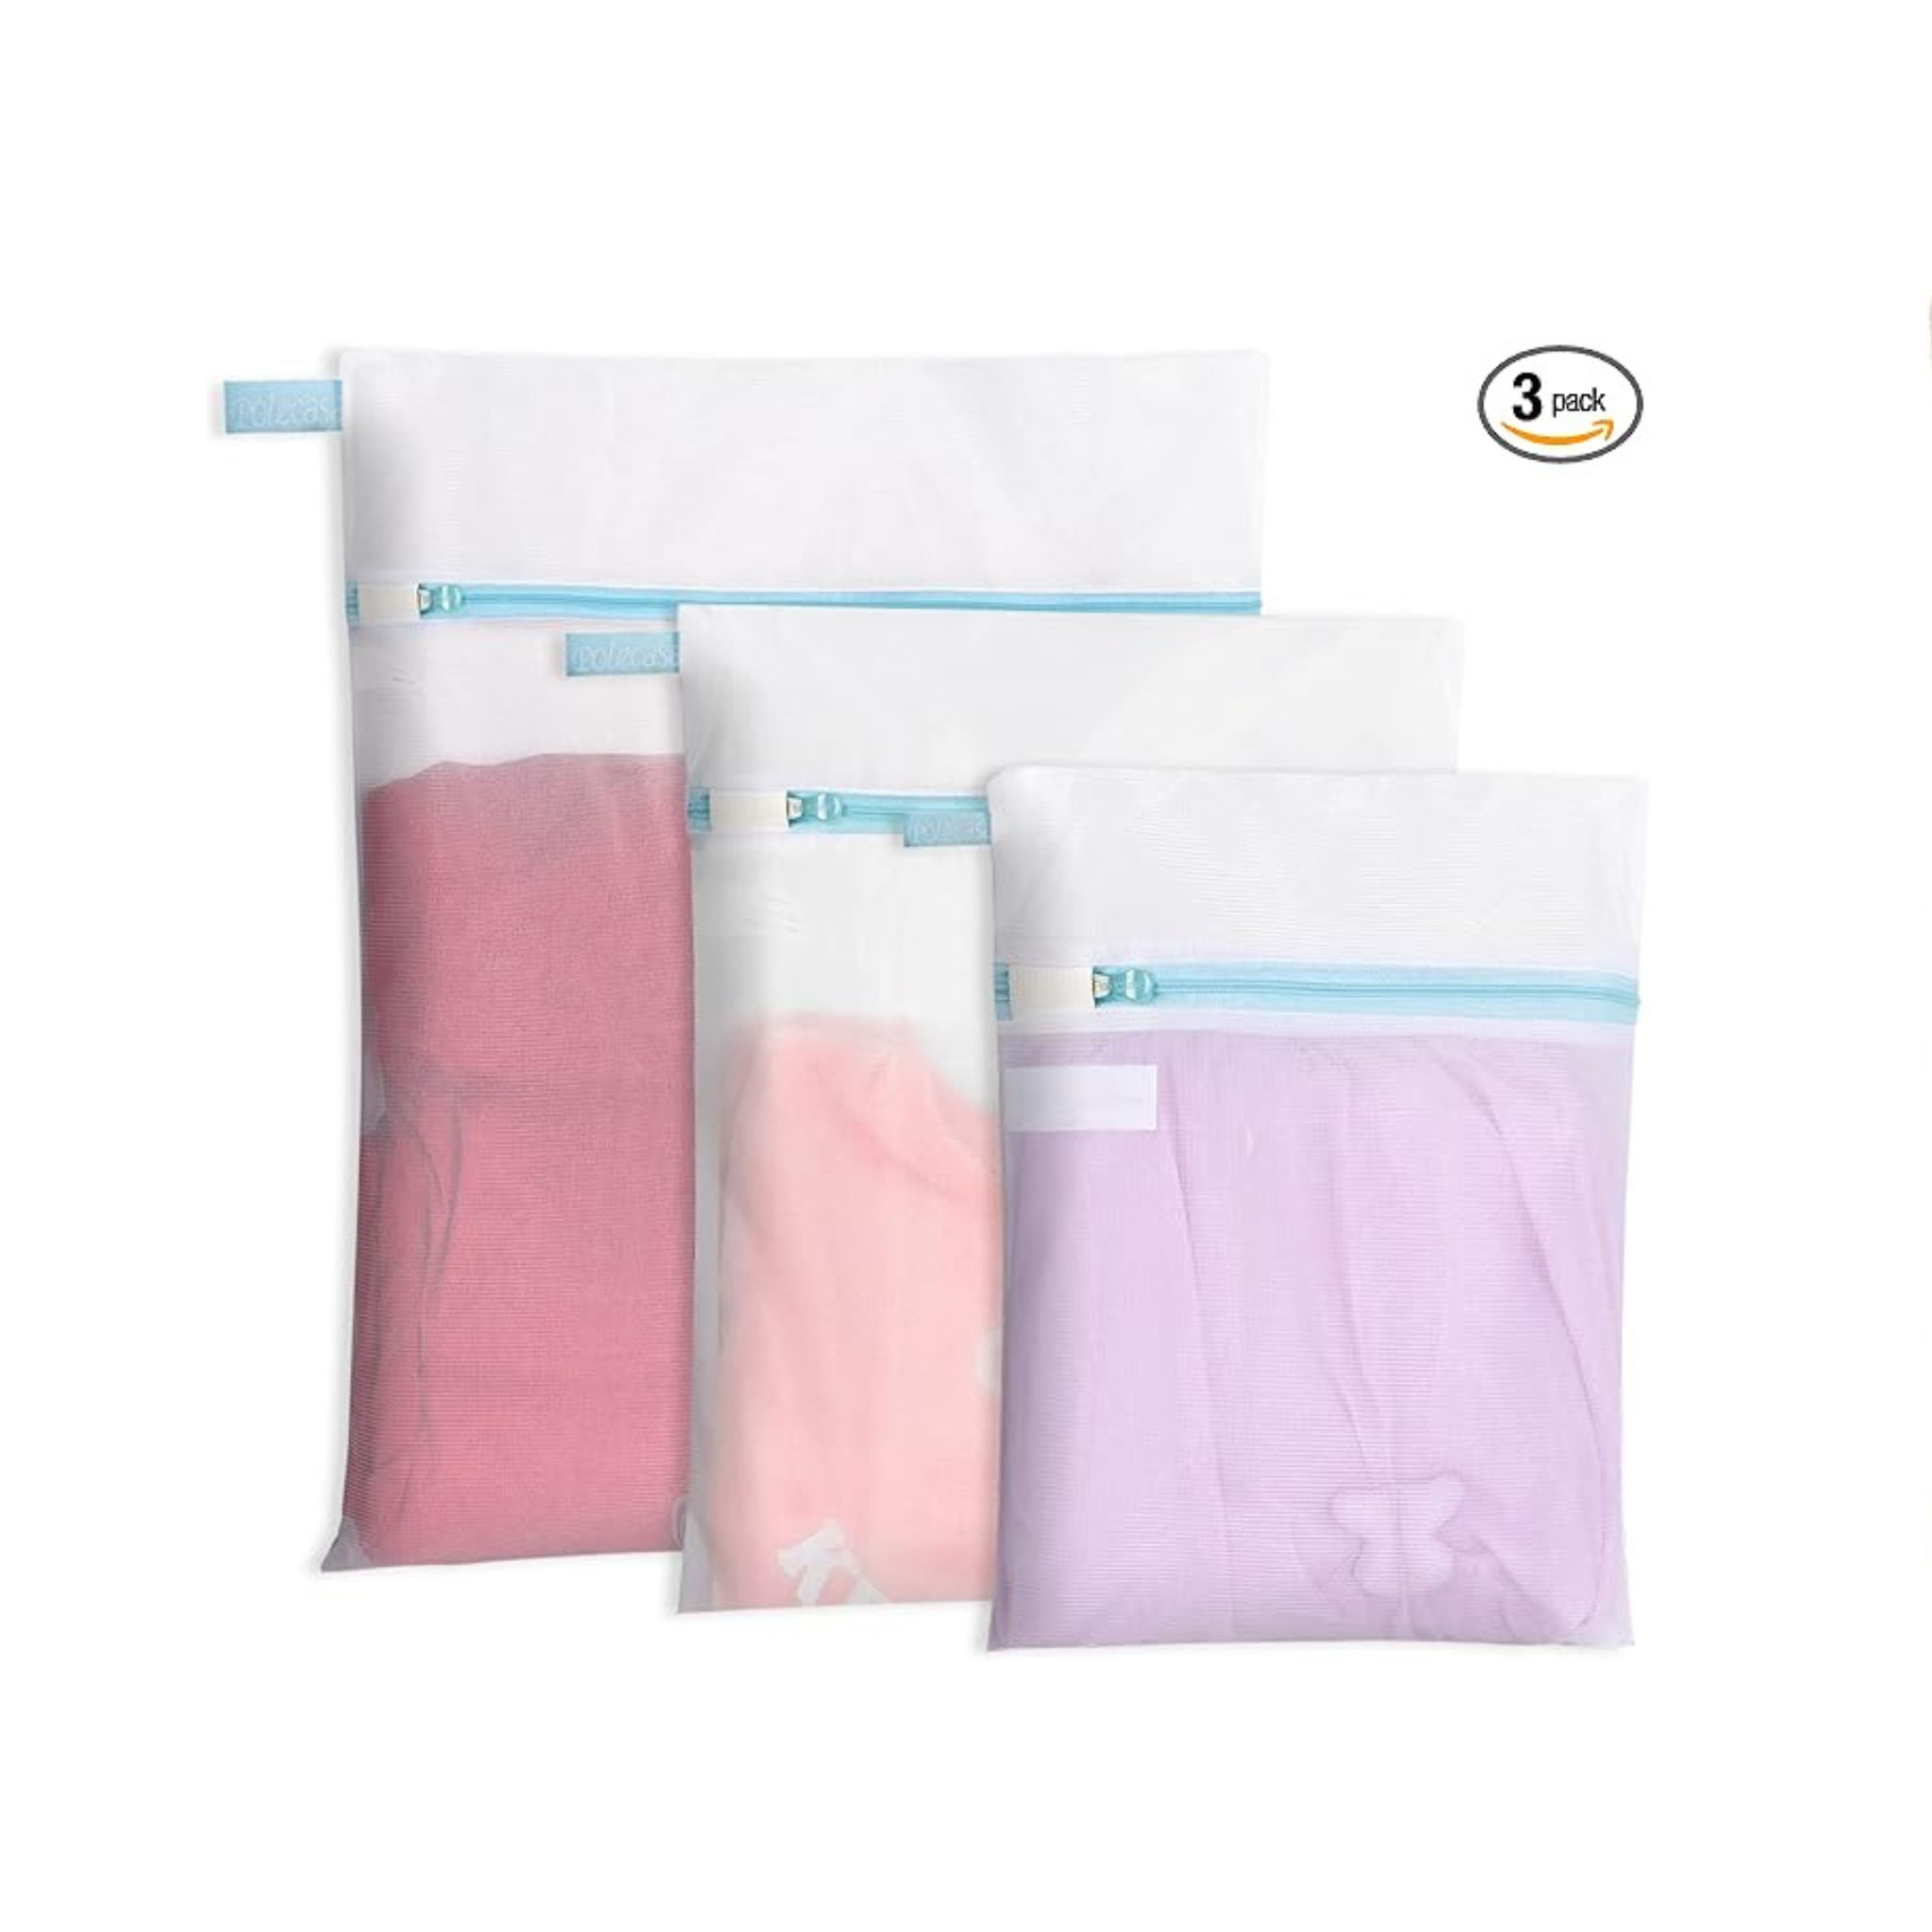 Polecasa Paquete de 3 bolsas de lavandería de malla fina duraderas (1 grande, 1 mediana, 1 pequeña)